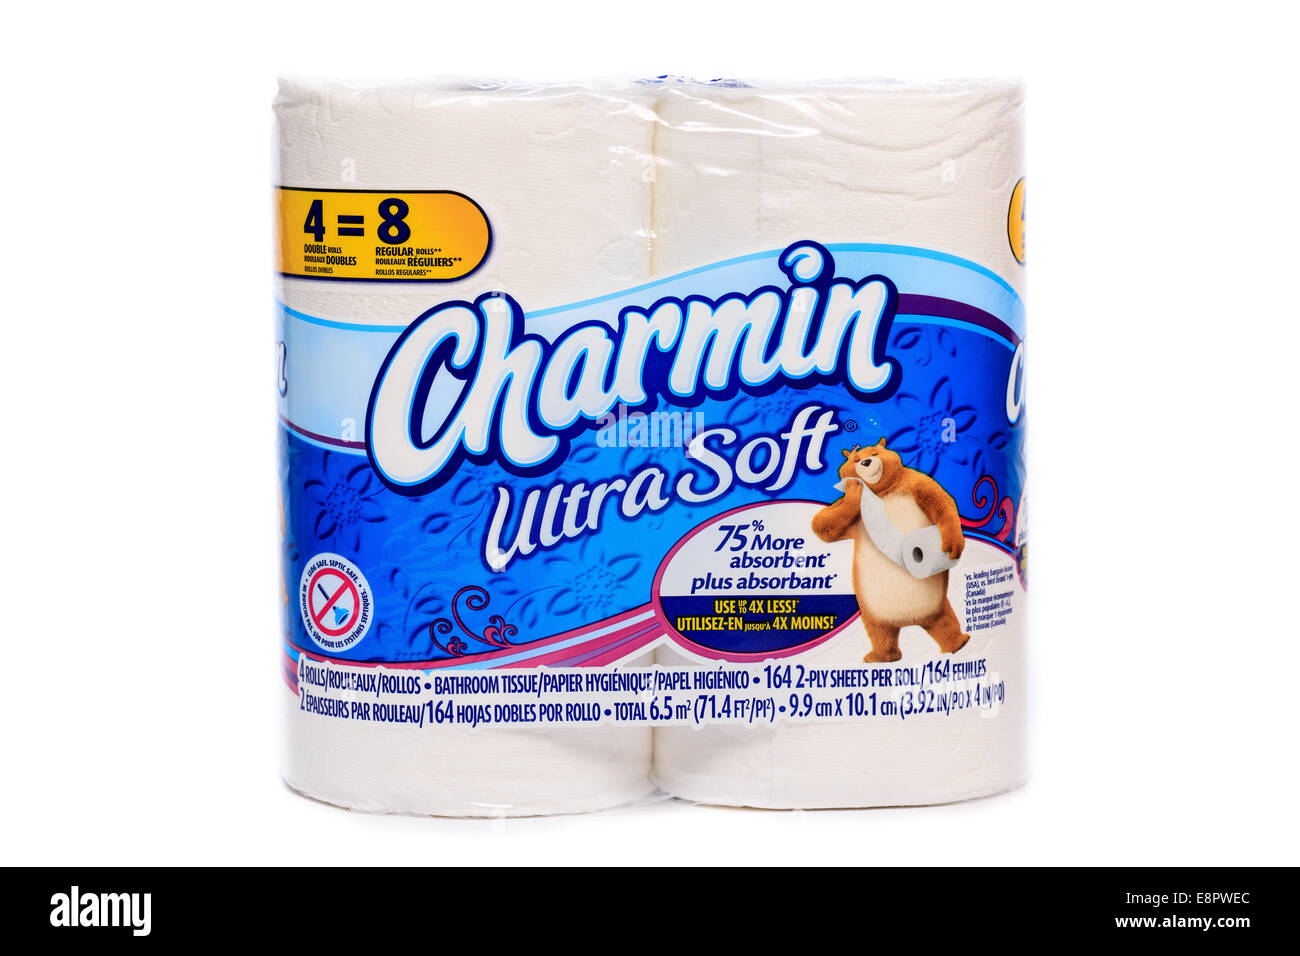 Procter & Gamble marque Charmin Ultra Soft rouleaux papier toilette Banque D'Images